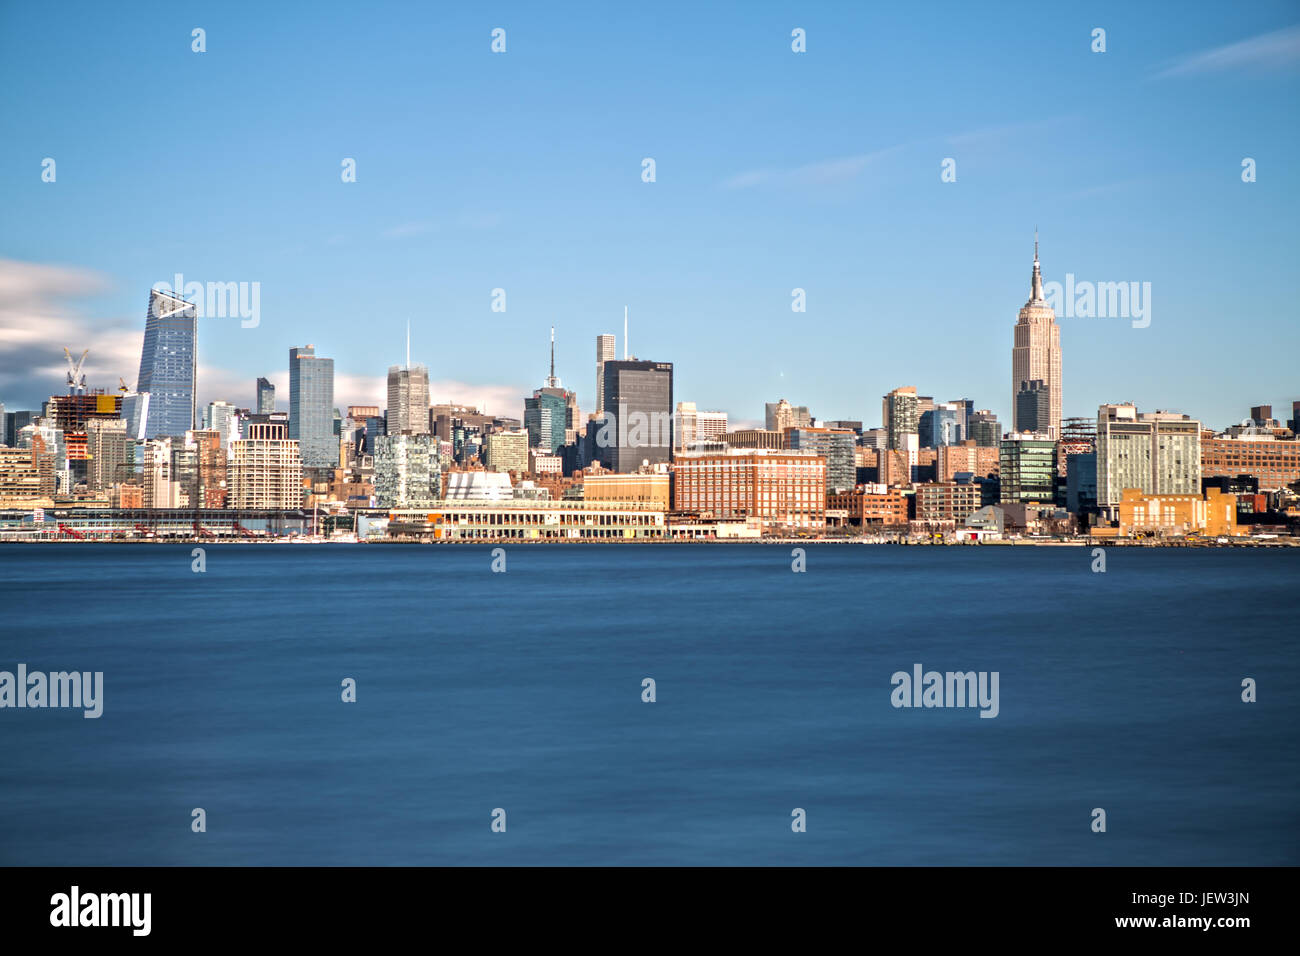 El Edificio Empire State y Midtown Manhattan visto desde Hoboken Foto de stock